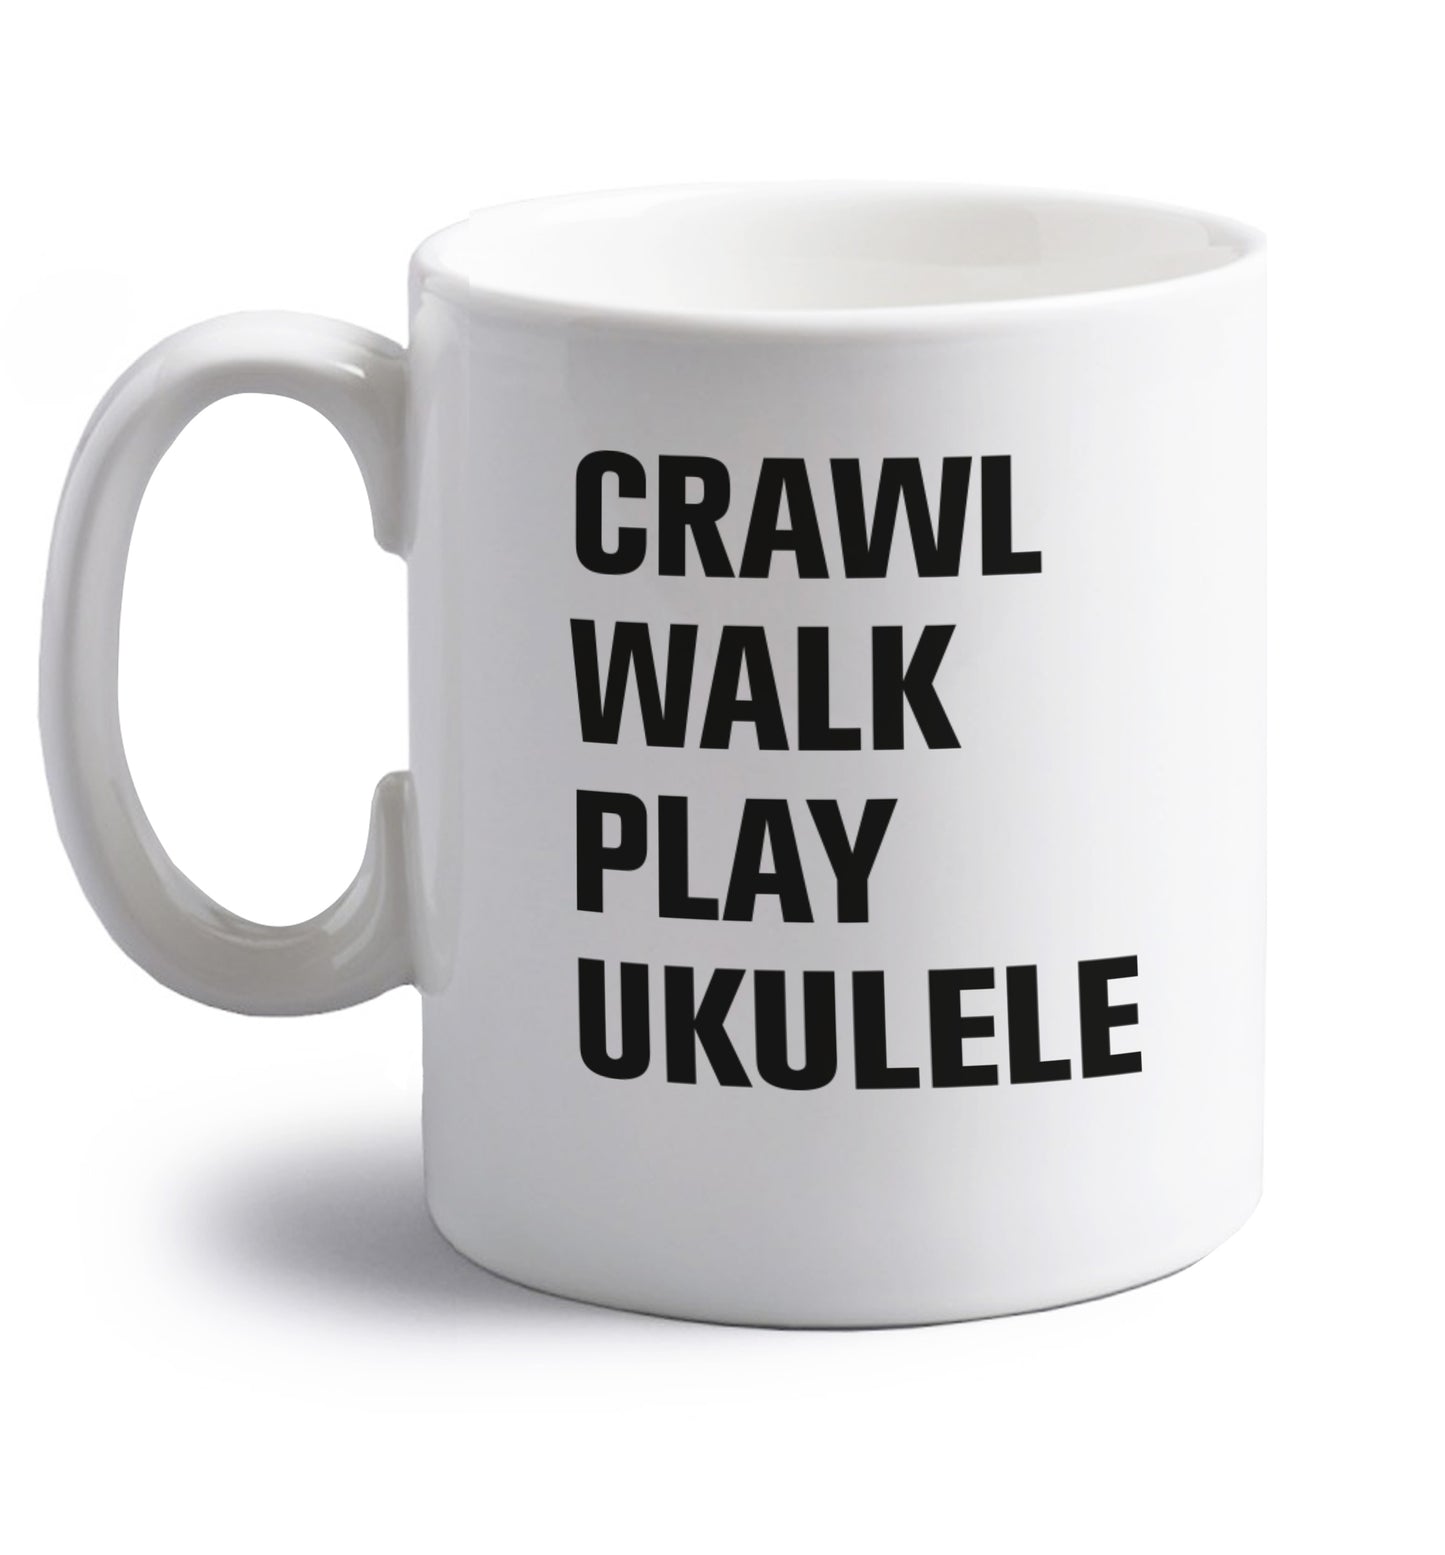 Crawl walk play ukulele right handed white ceramic mug 